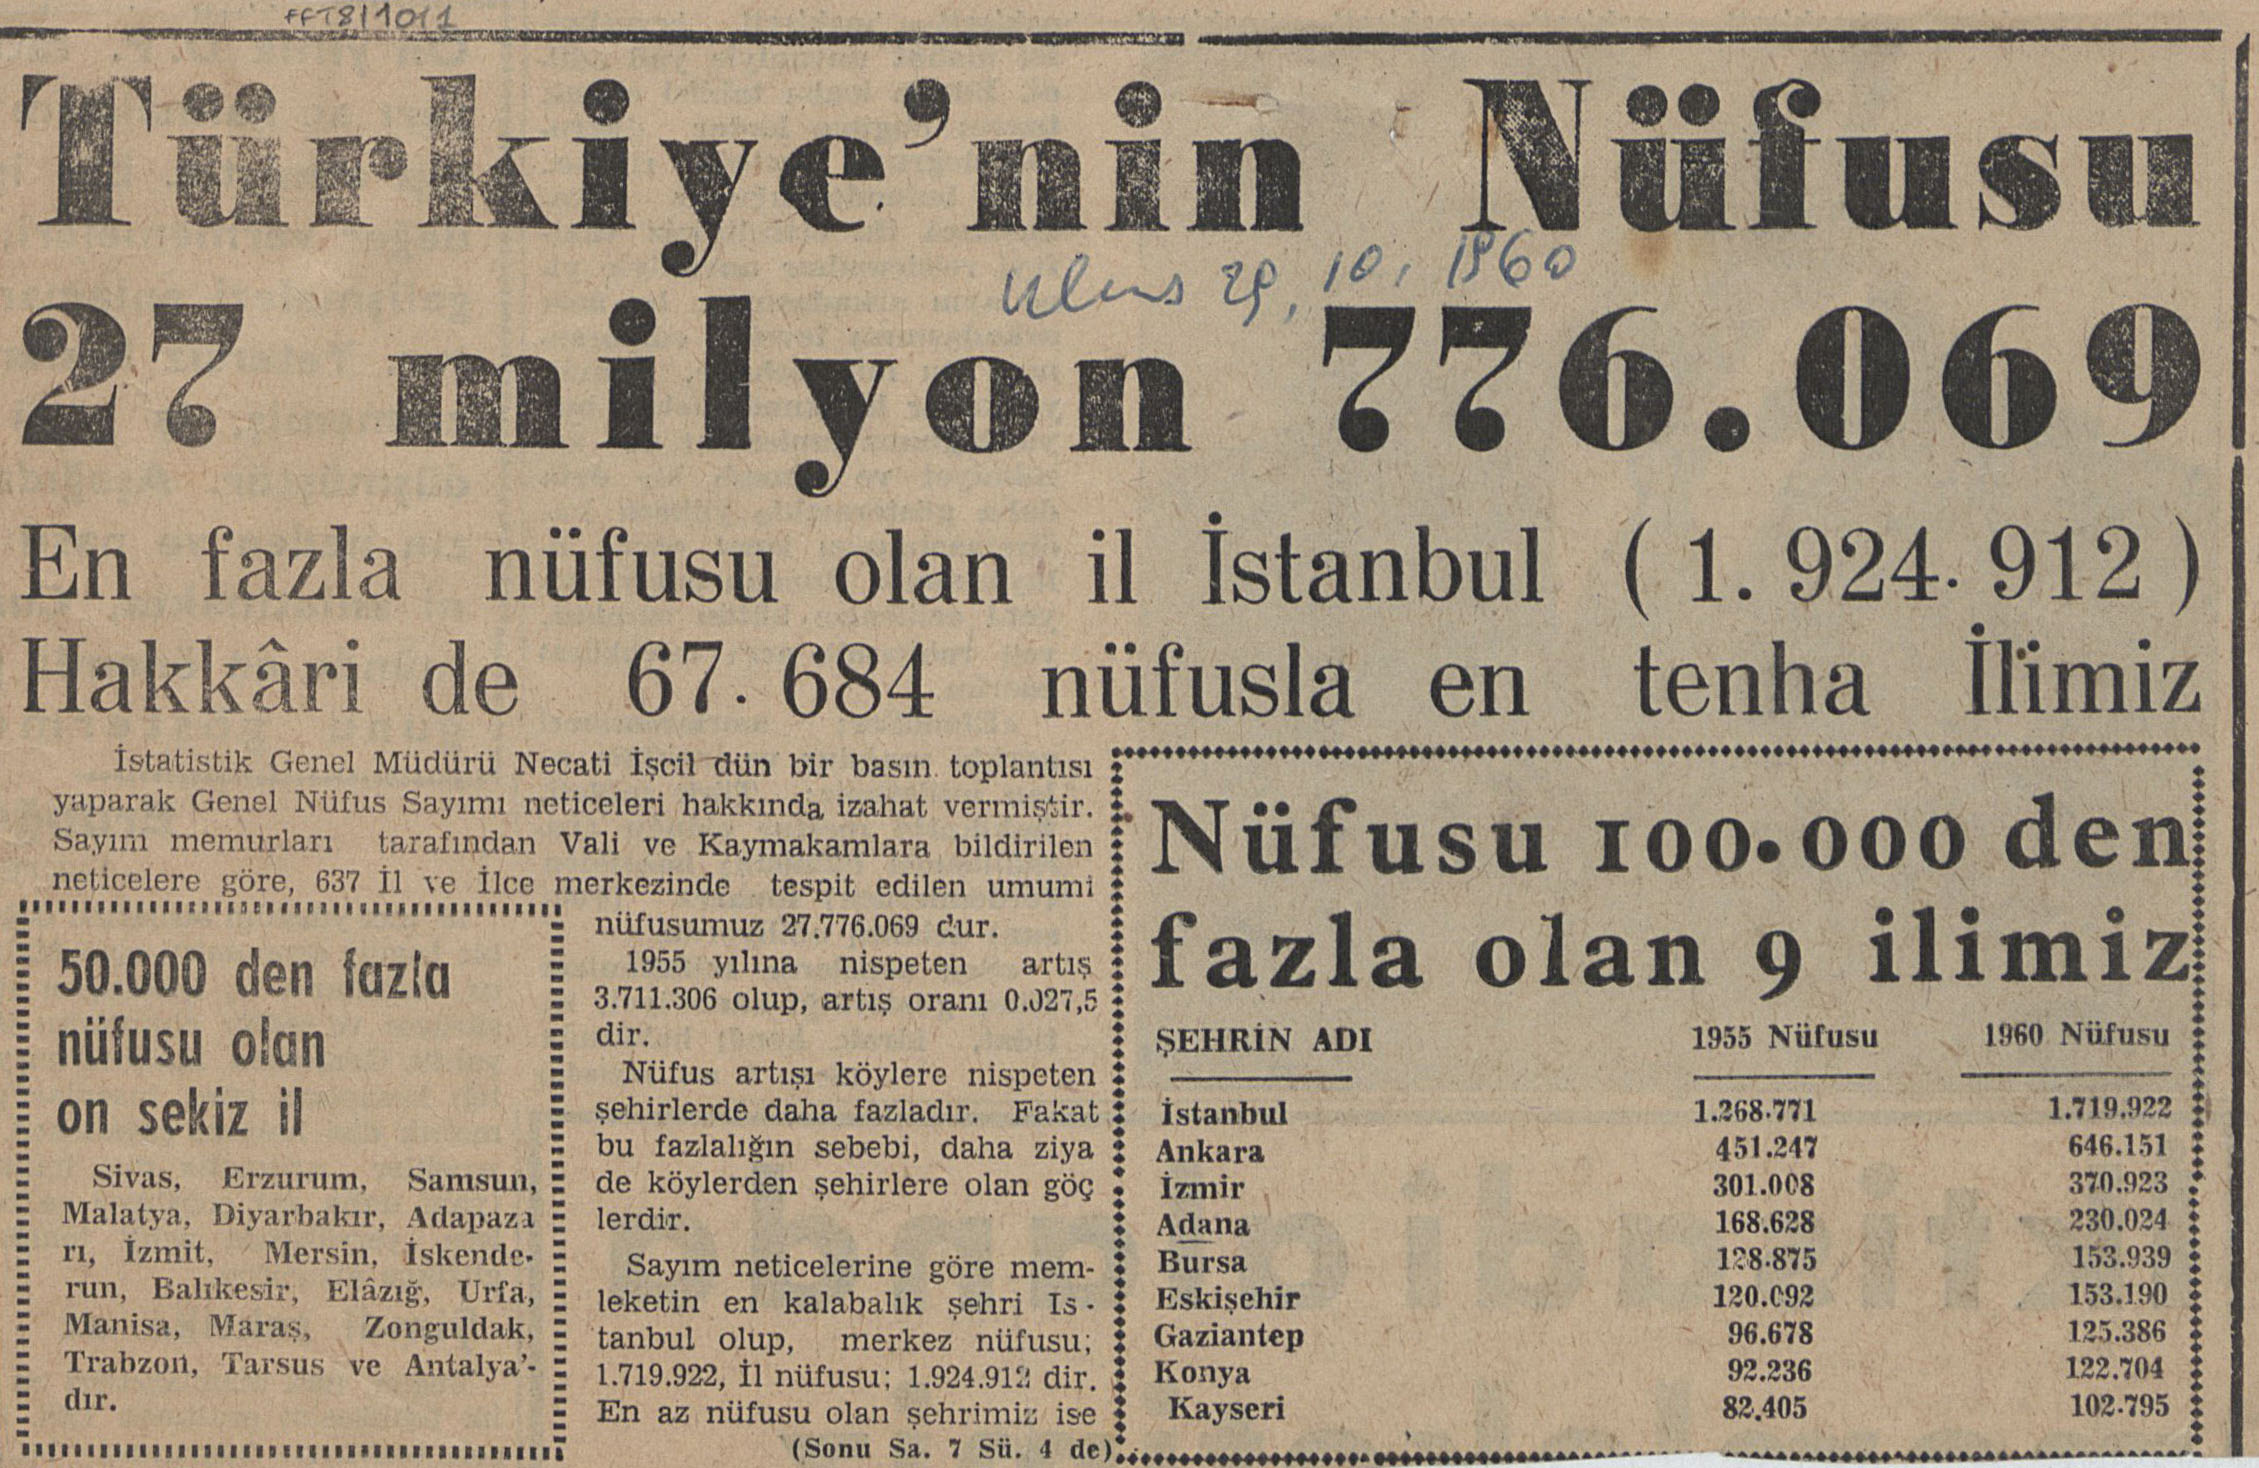 29 Ekim 1960 tarihli bir gazete kupürü, Salt Araştırma, Feridun Fazıl Tülbentçi Arşivi